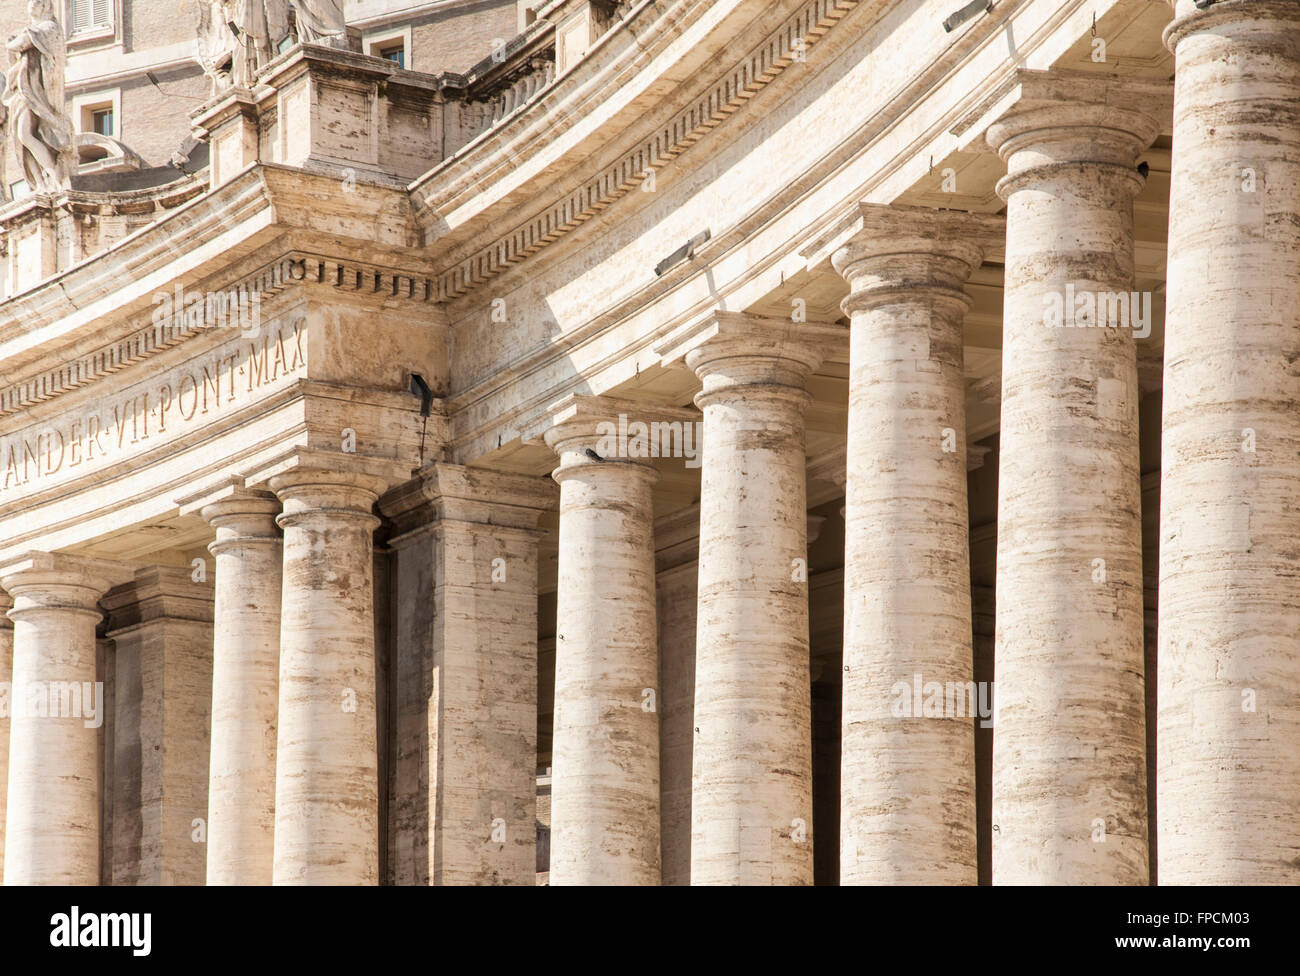 Ein Blick auf den Vatikan in Rom, Betonung auf den Säulen des Gebäudes. Stockfoto